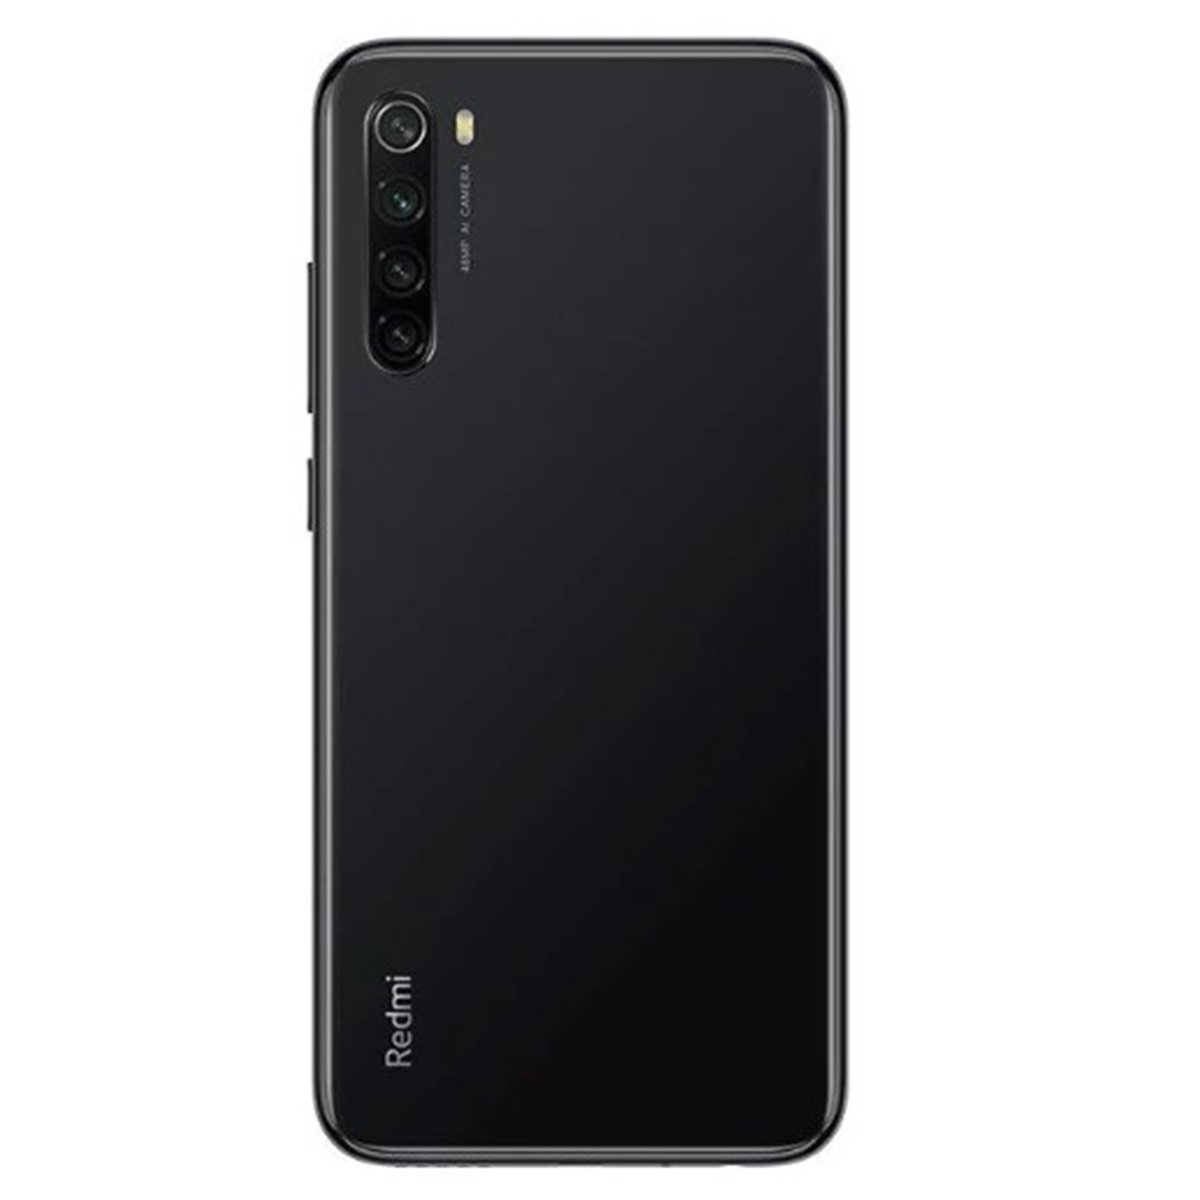 Xiaomi Redmi Note 8 64GB Black